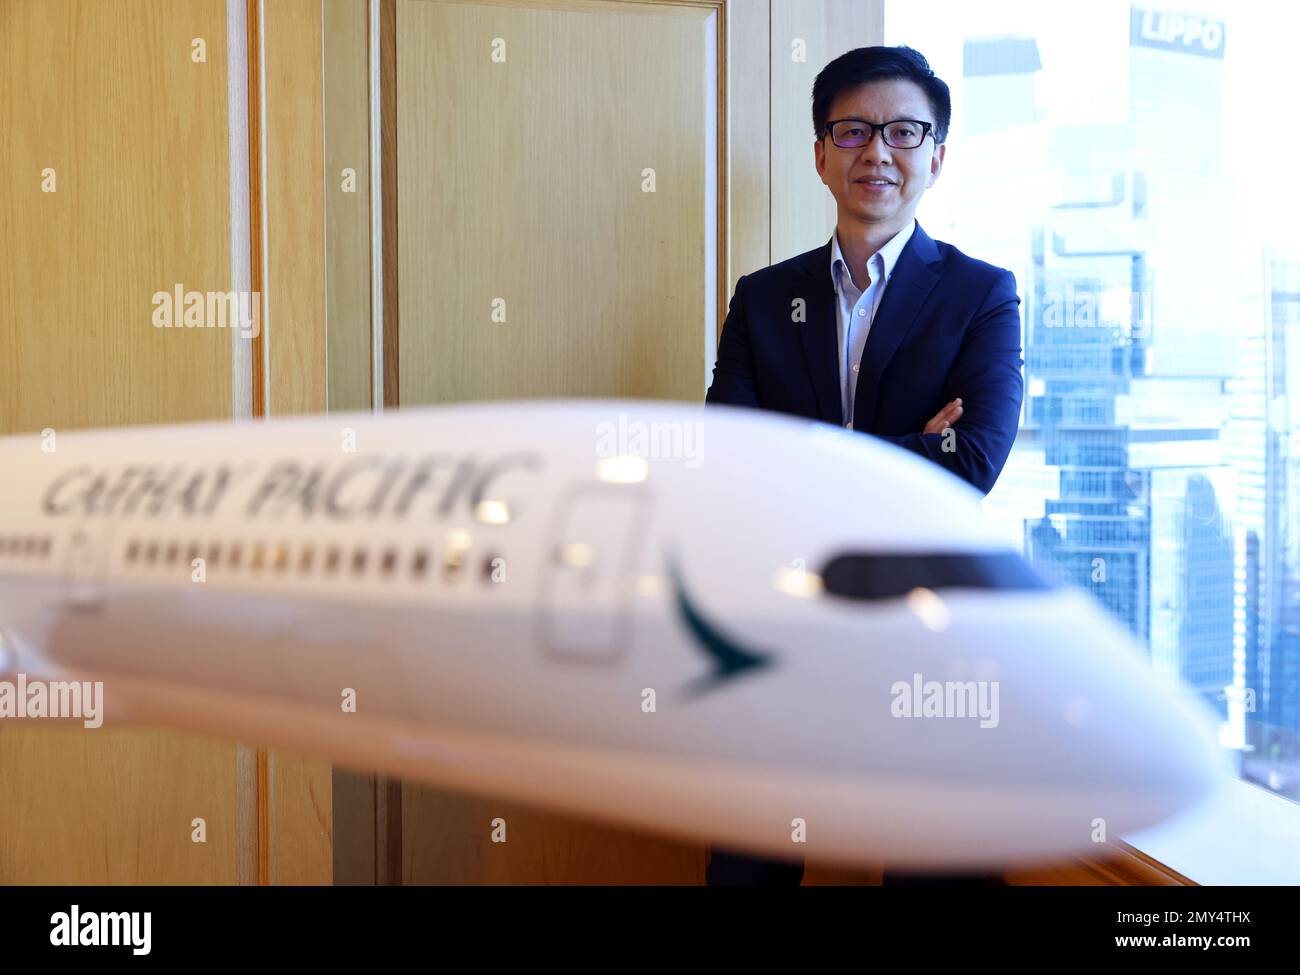 Ronald Lam Siu-por, nuovo Amministratore Delegato di Cathay Pacific  Airways, presso l'ufficio SwireHH di Adimraalty. 30JAN23 SCMP /K. Y. Cheng  Foto stock - Alamy